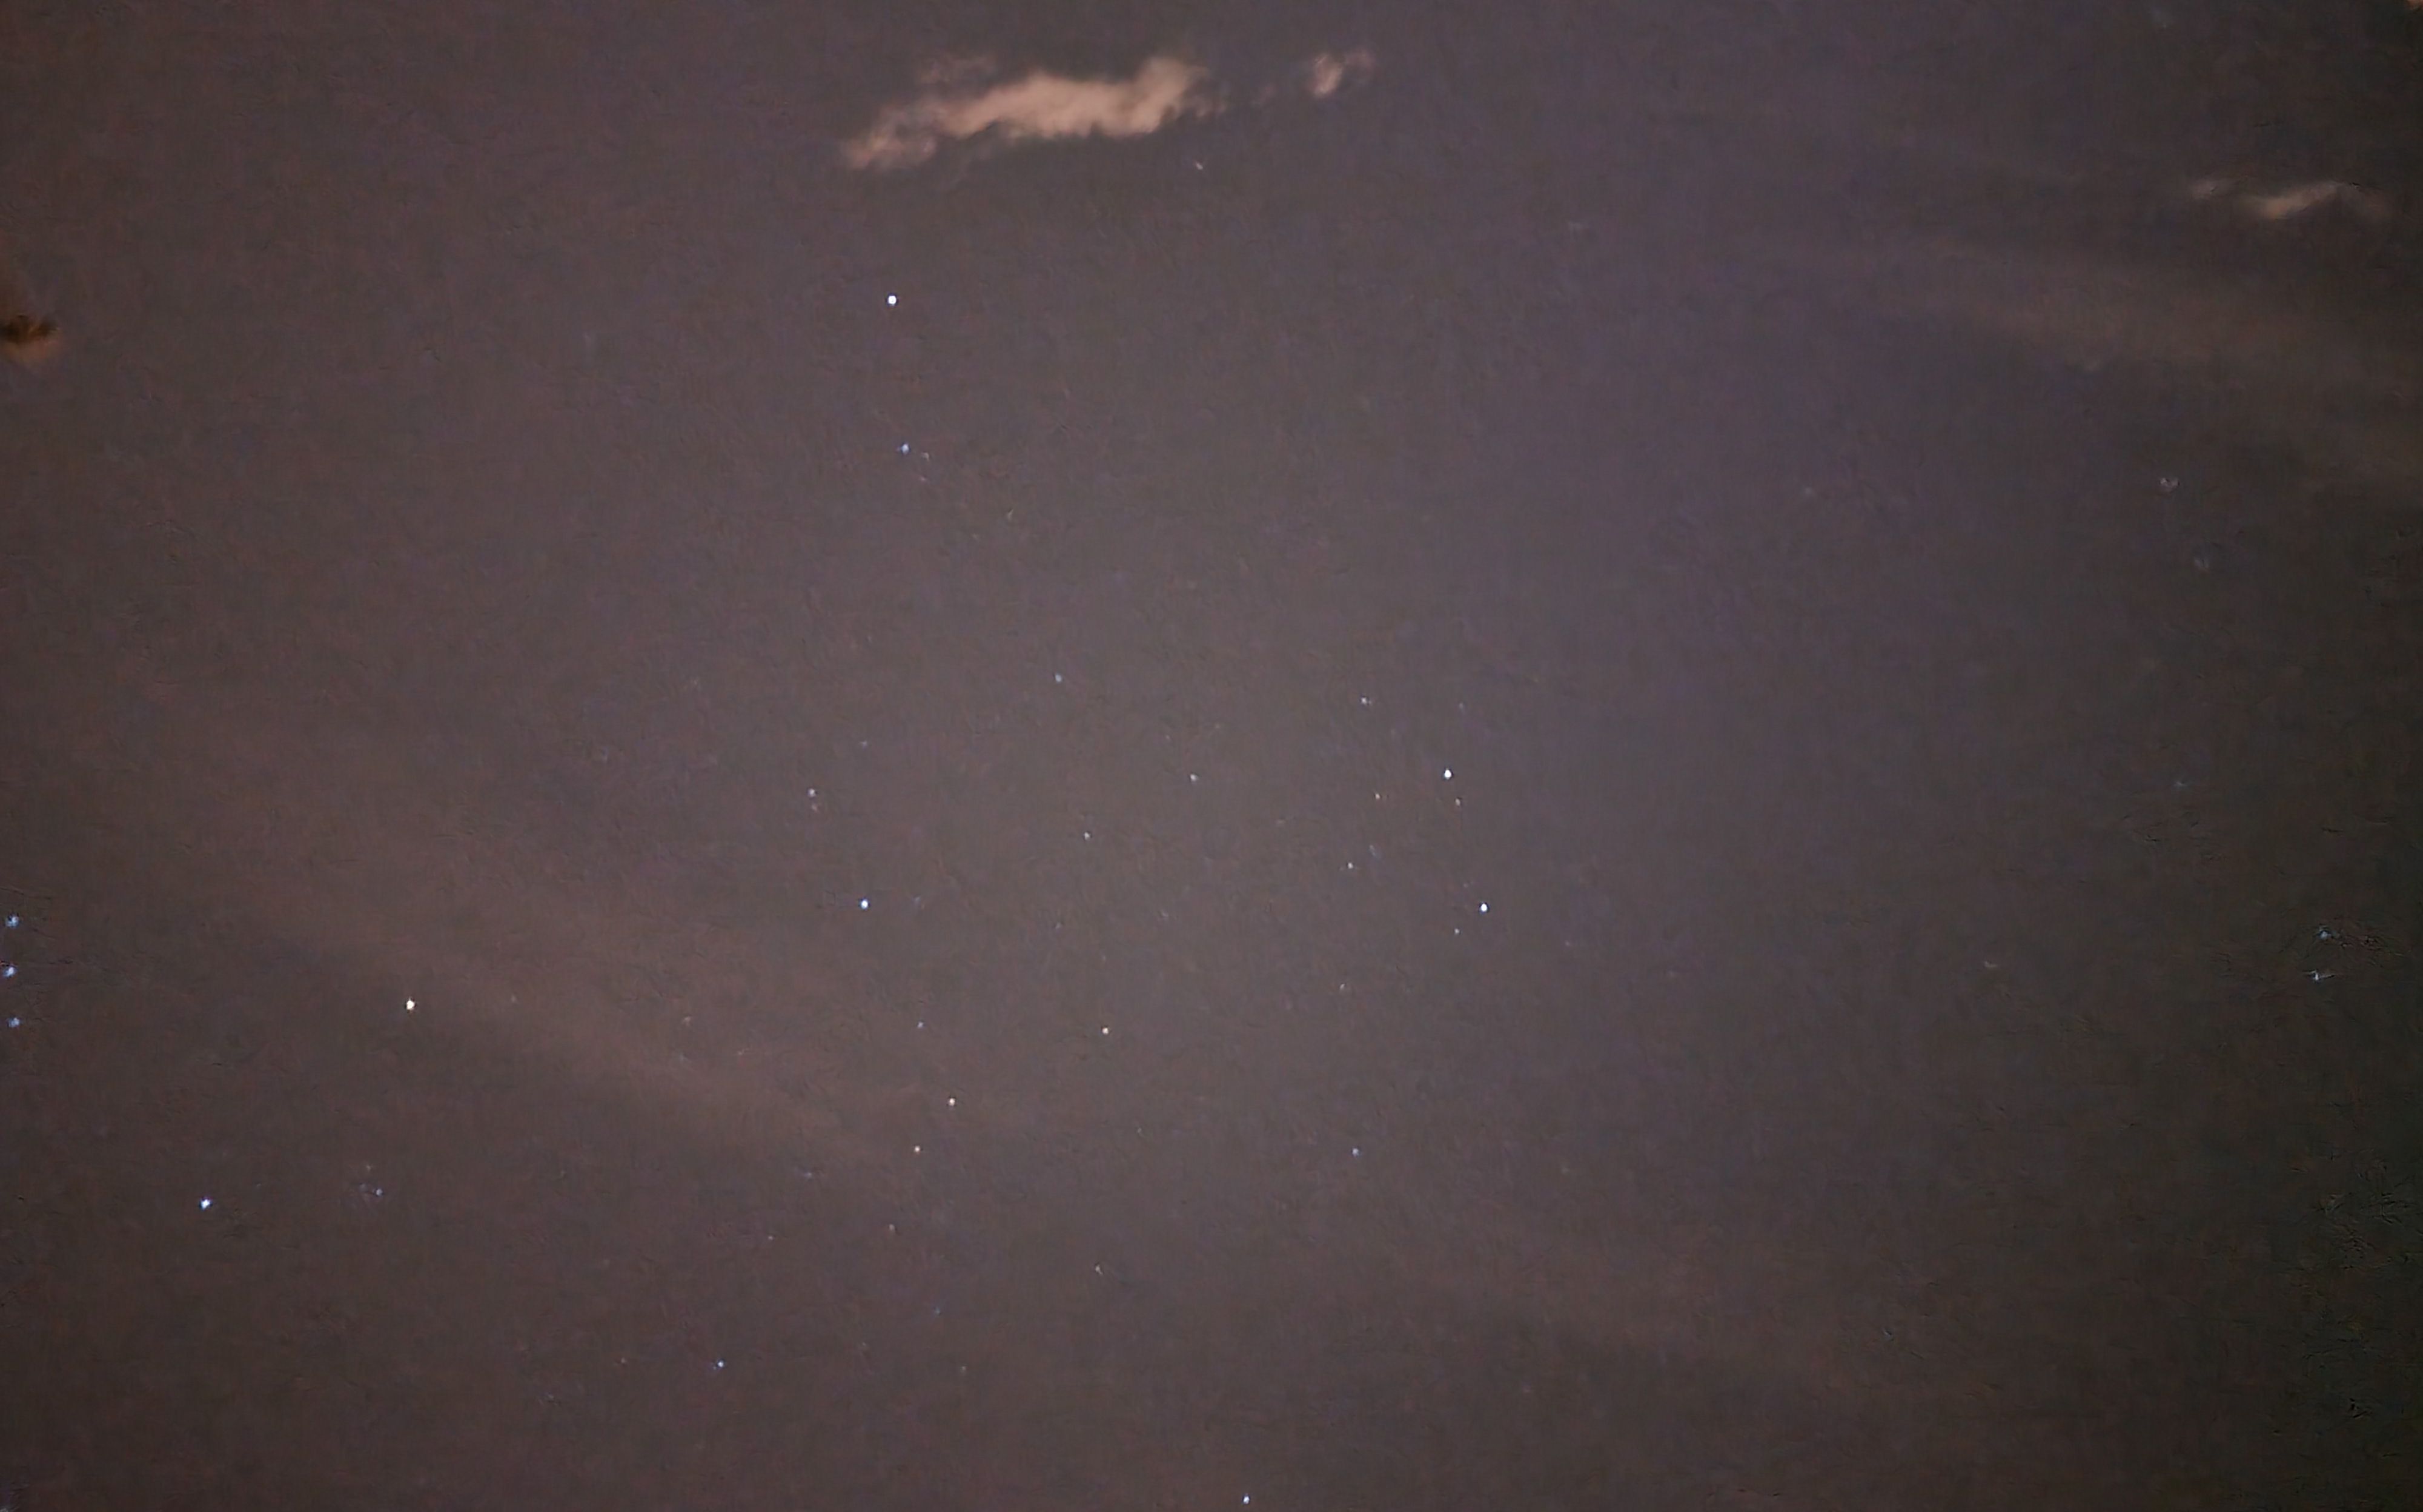 Foto del cielo estrellado tomada con el modo noche del Galaxy S21 Ultra 5G / CG